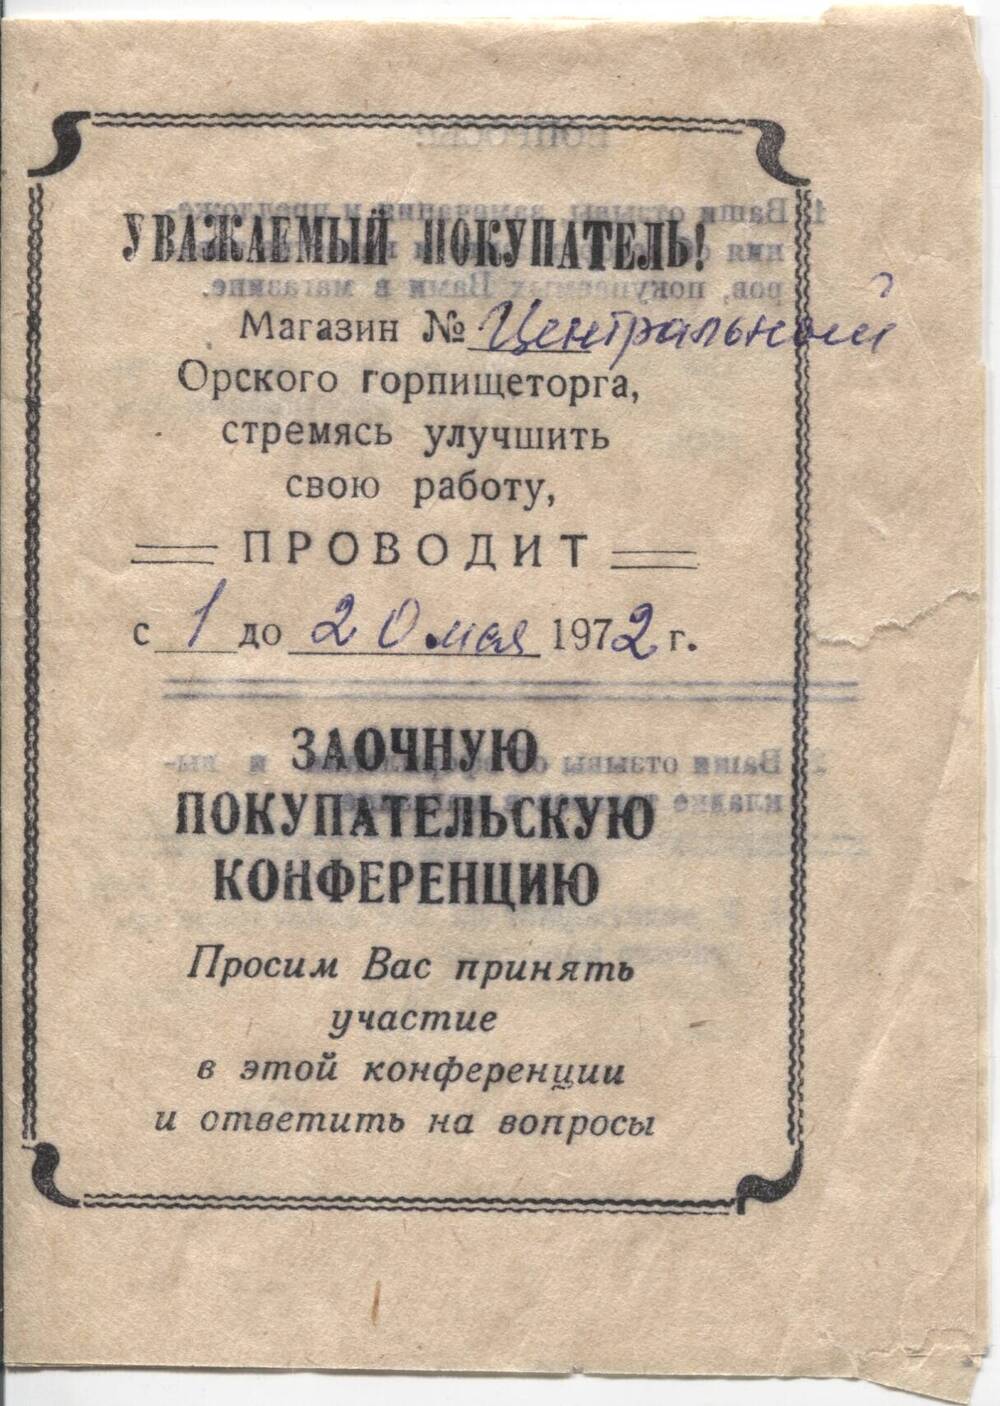 Листовка - Приглашение на заочную покупательскую конференцию с 1 по 20 мая 1972г. магазина Центрального, Орского горпищеторга.